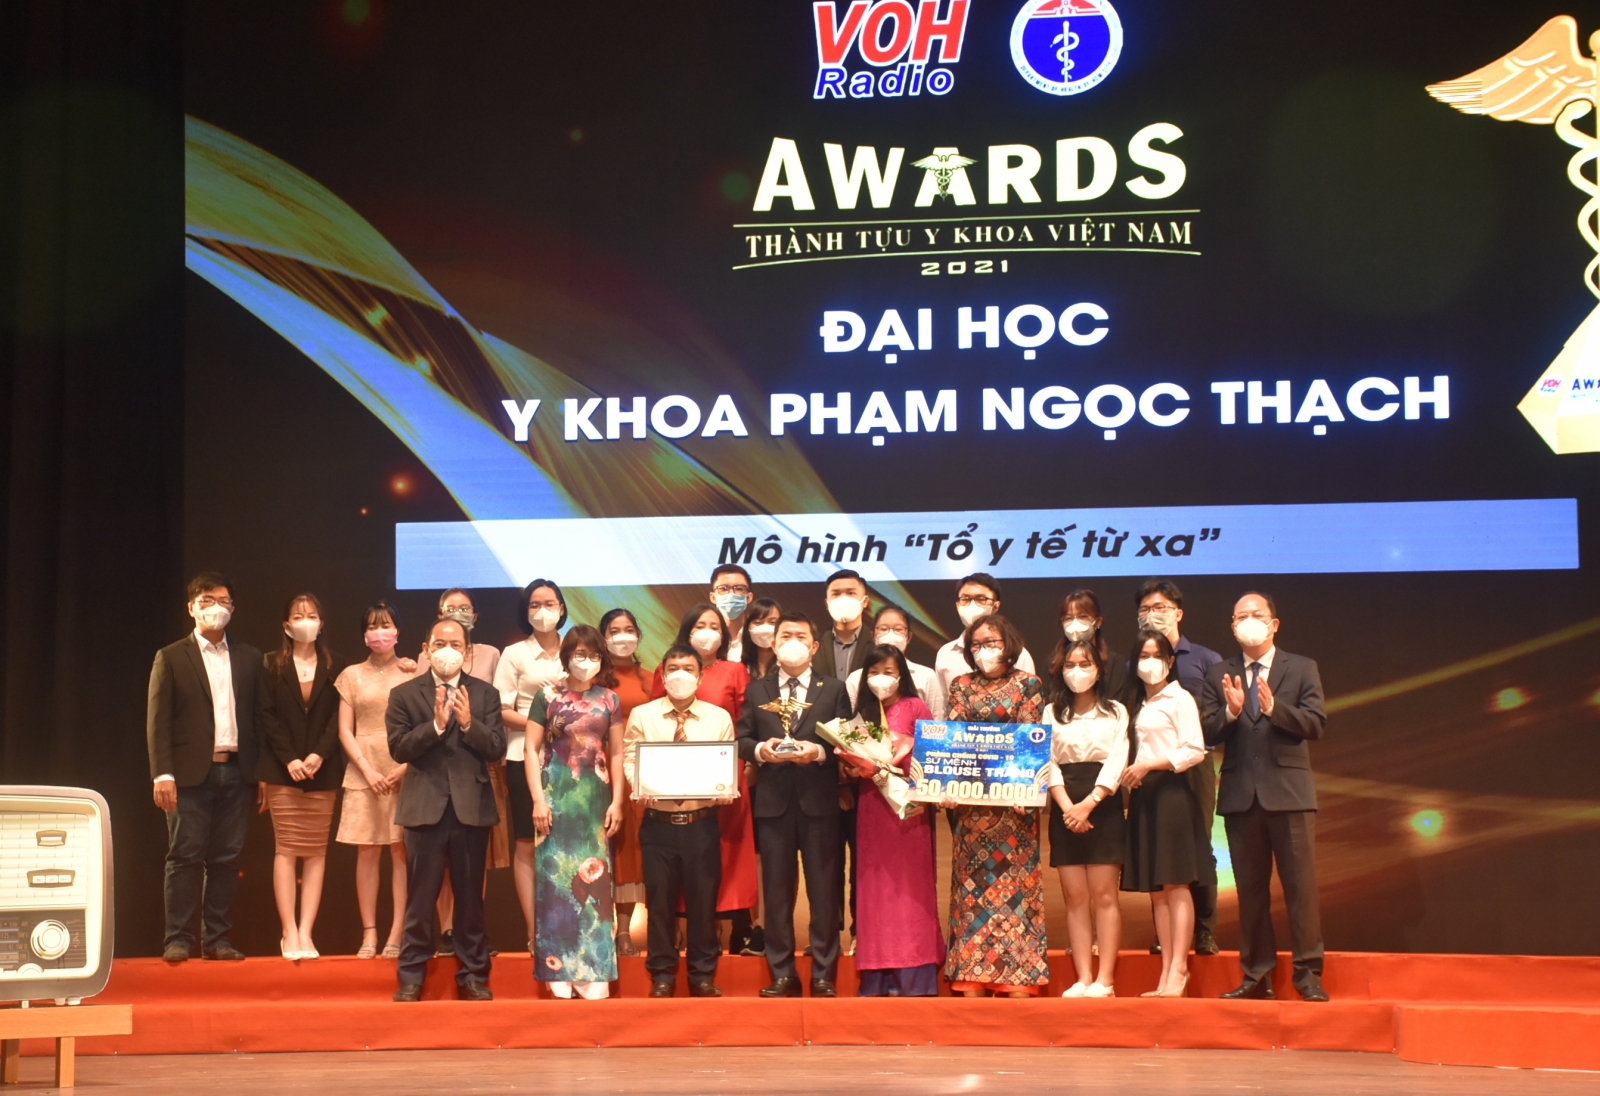 Giải thưởng Thành tựu Y khoa Việt Nam năm 2021 vinh danh hai trường đại học Thành phố Hồ Chí Minh - Ảnh minh hoạ 7